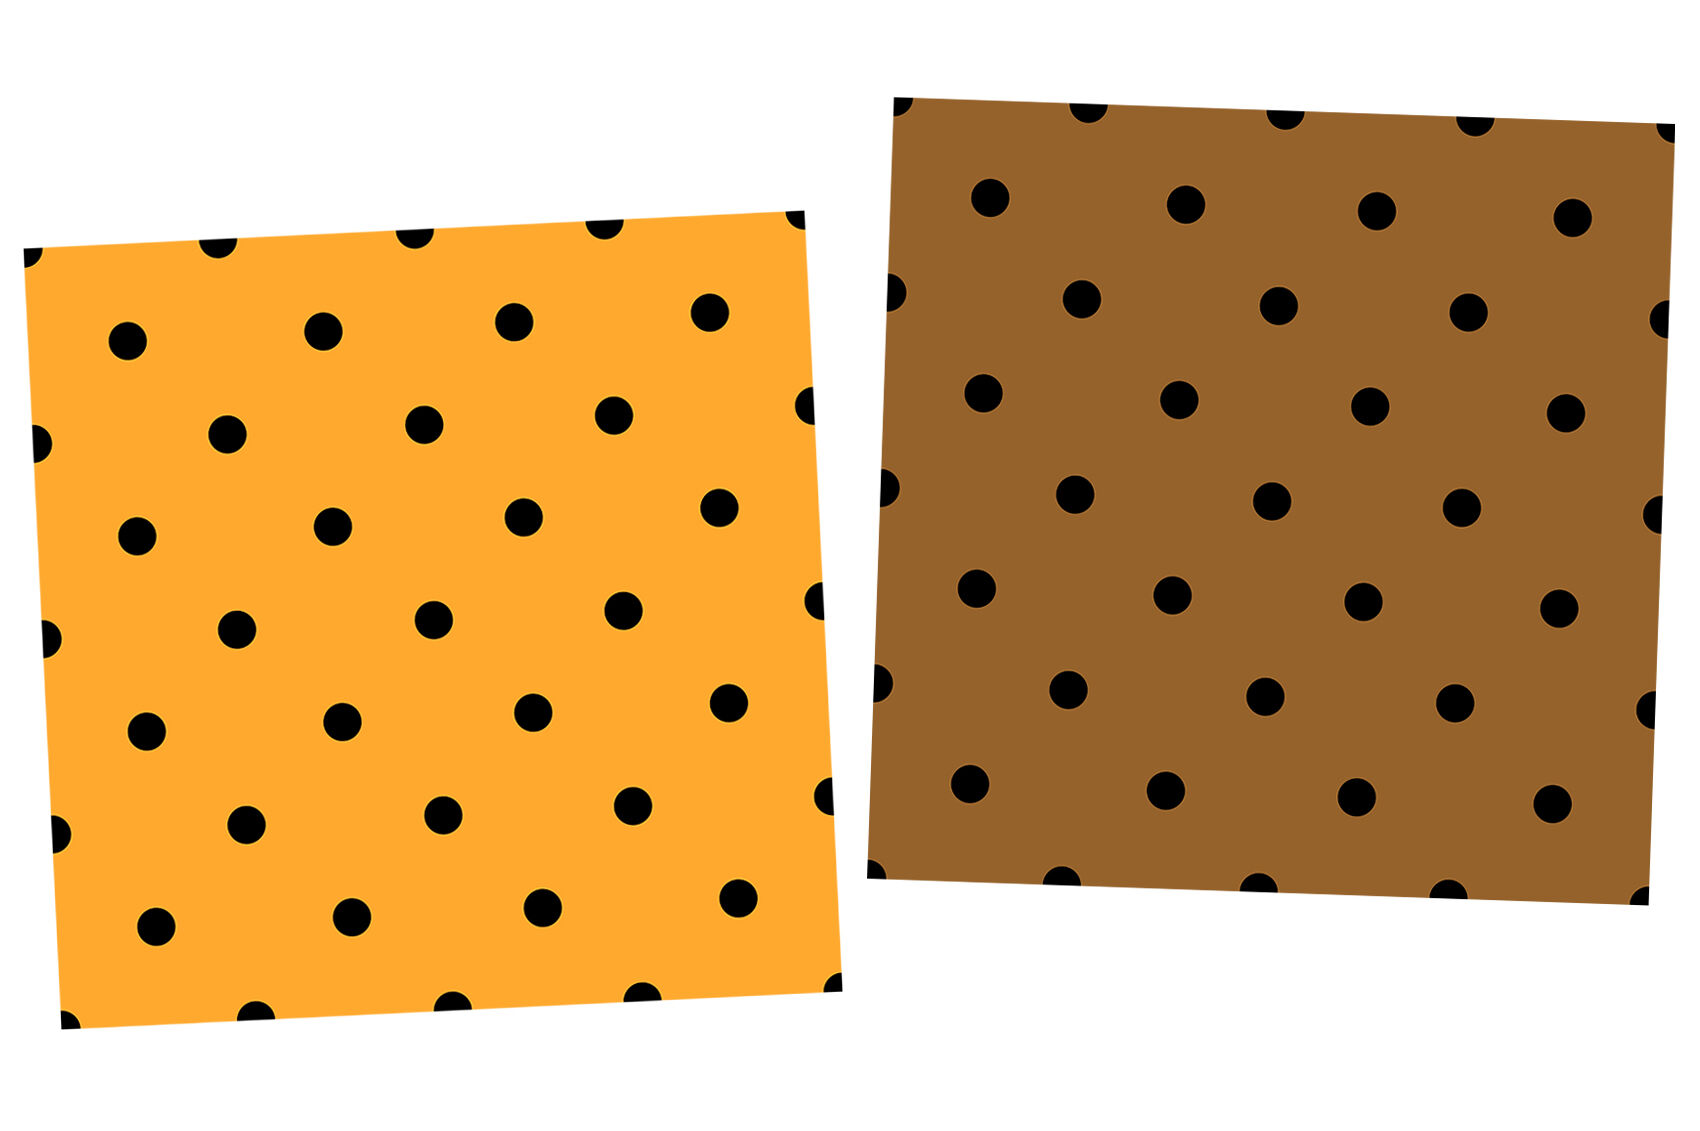 black and yellow polka dots